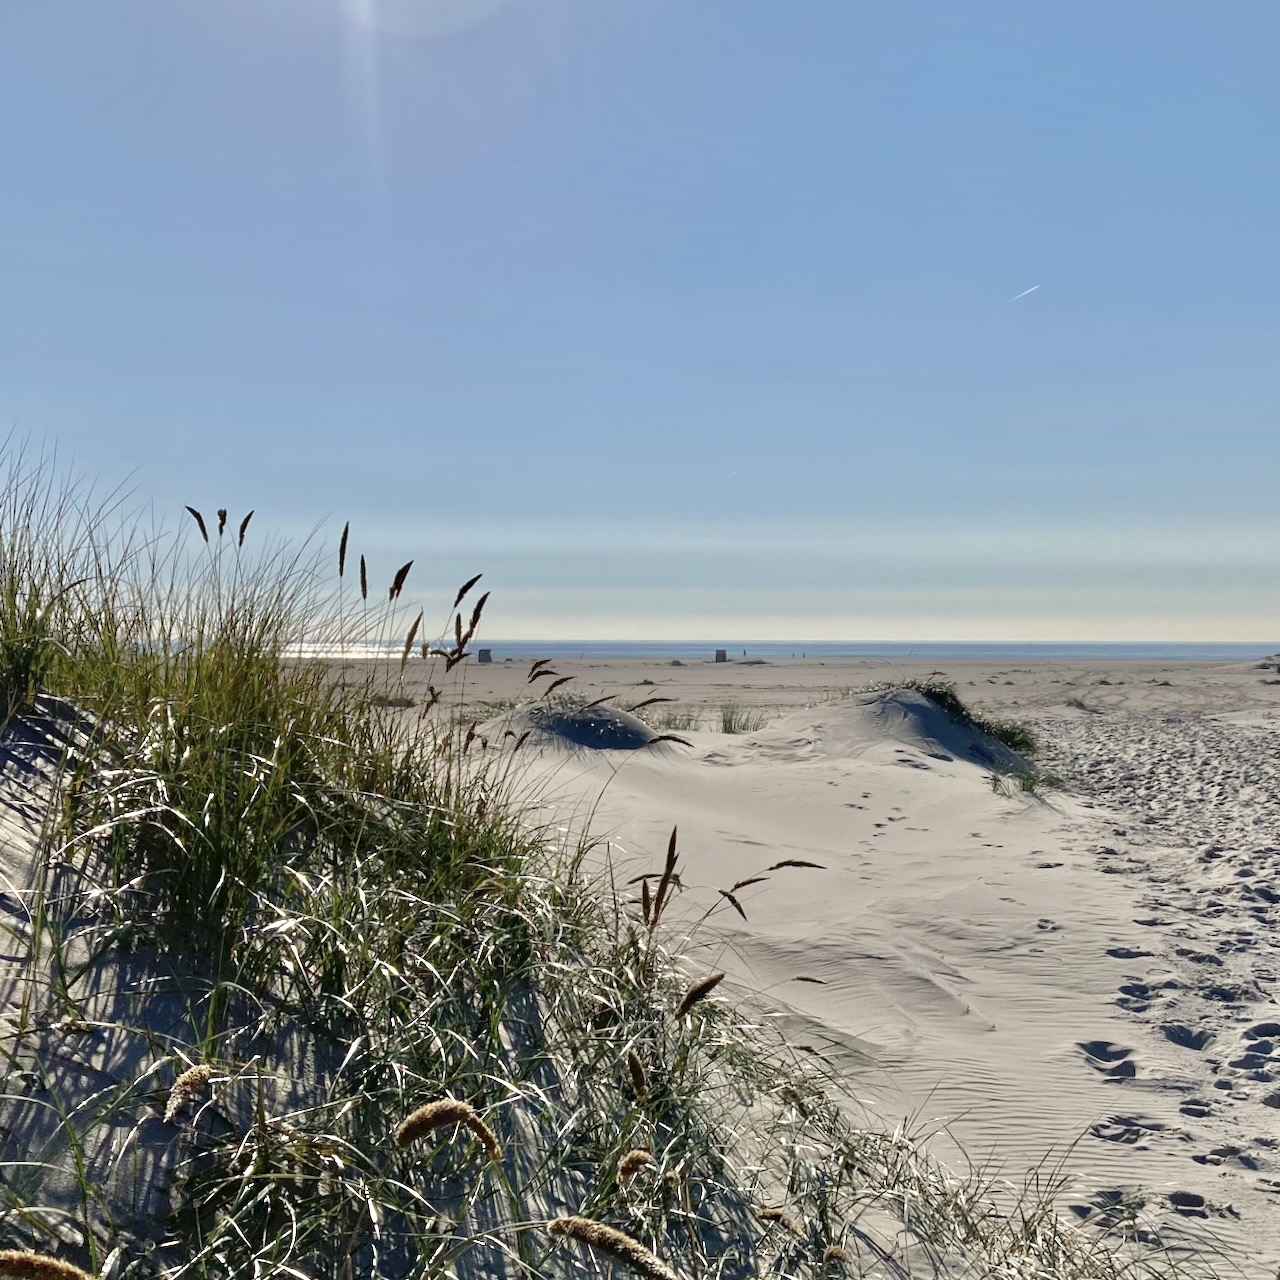 Links im Vordergrund eine kleine Düne, mit Dünengras bewachsen, rechts ein Pfad durch den weißen Sand Richtung Meer. Darüber blauer Himmel.